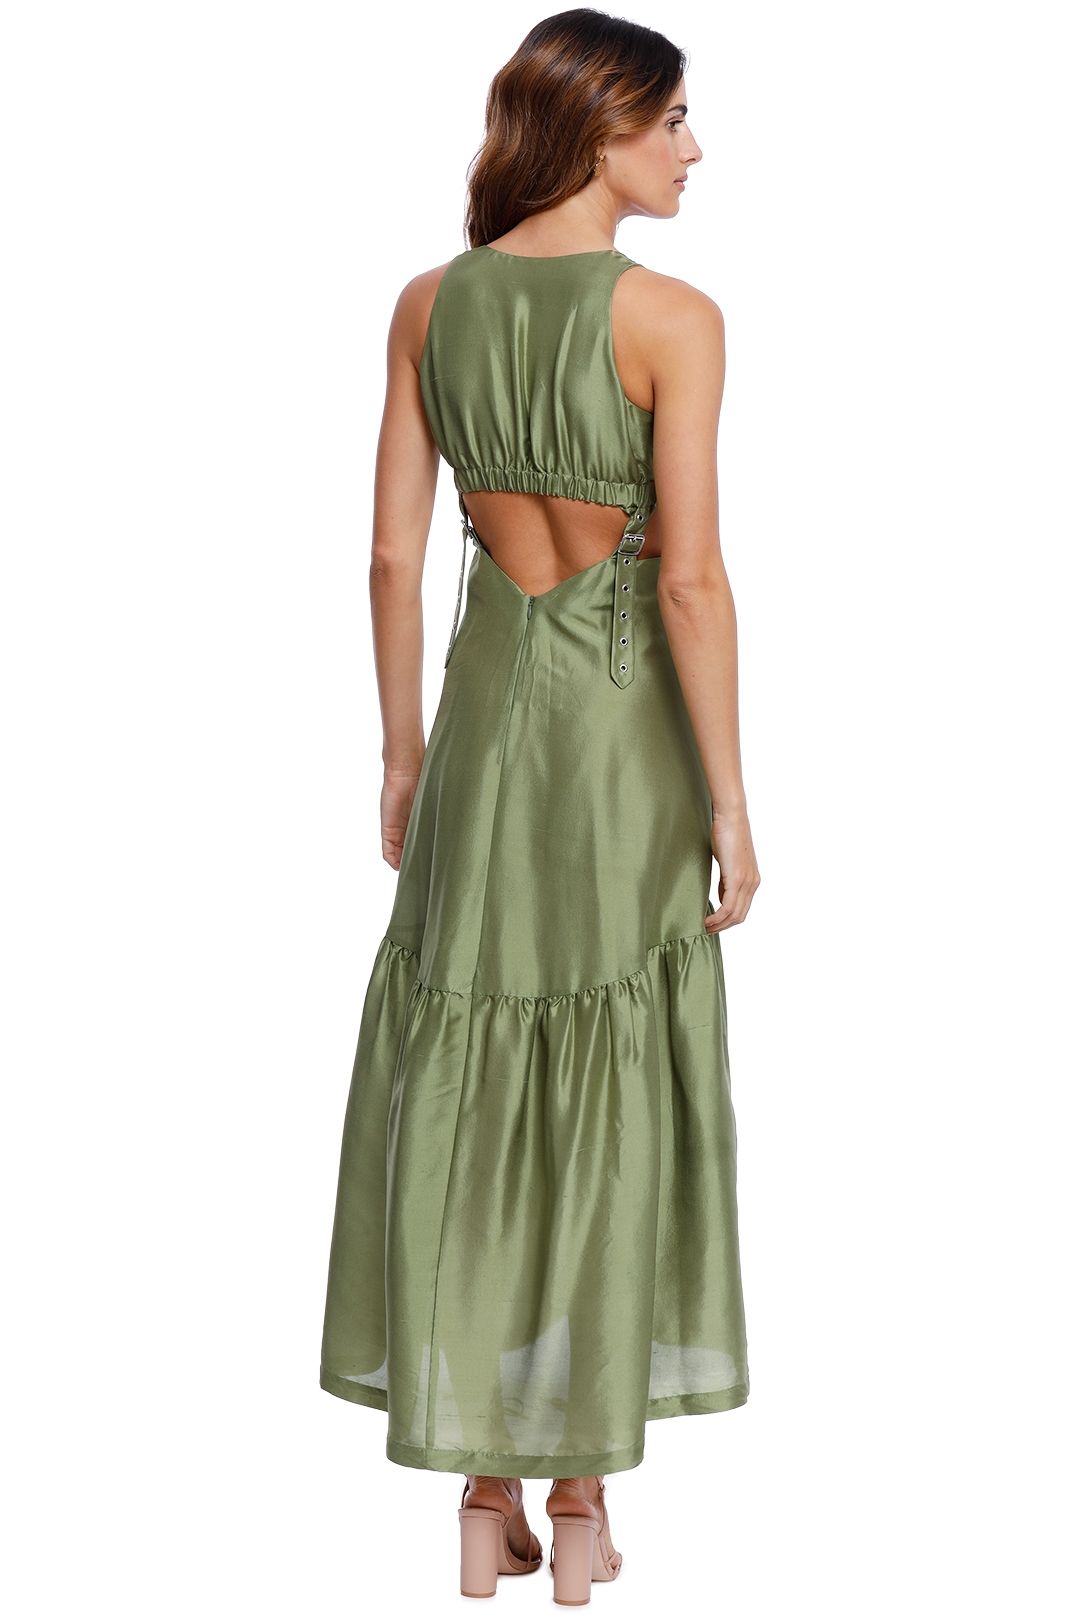 Romance Ruffle Dress ~ Moss Green Luxe Satin XXS